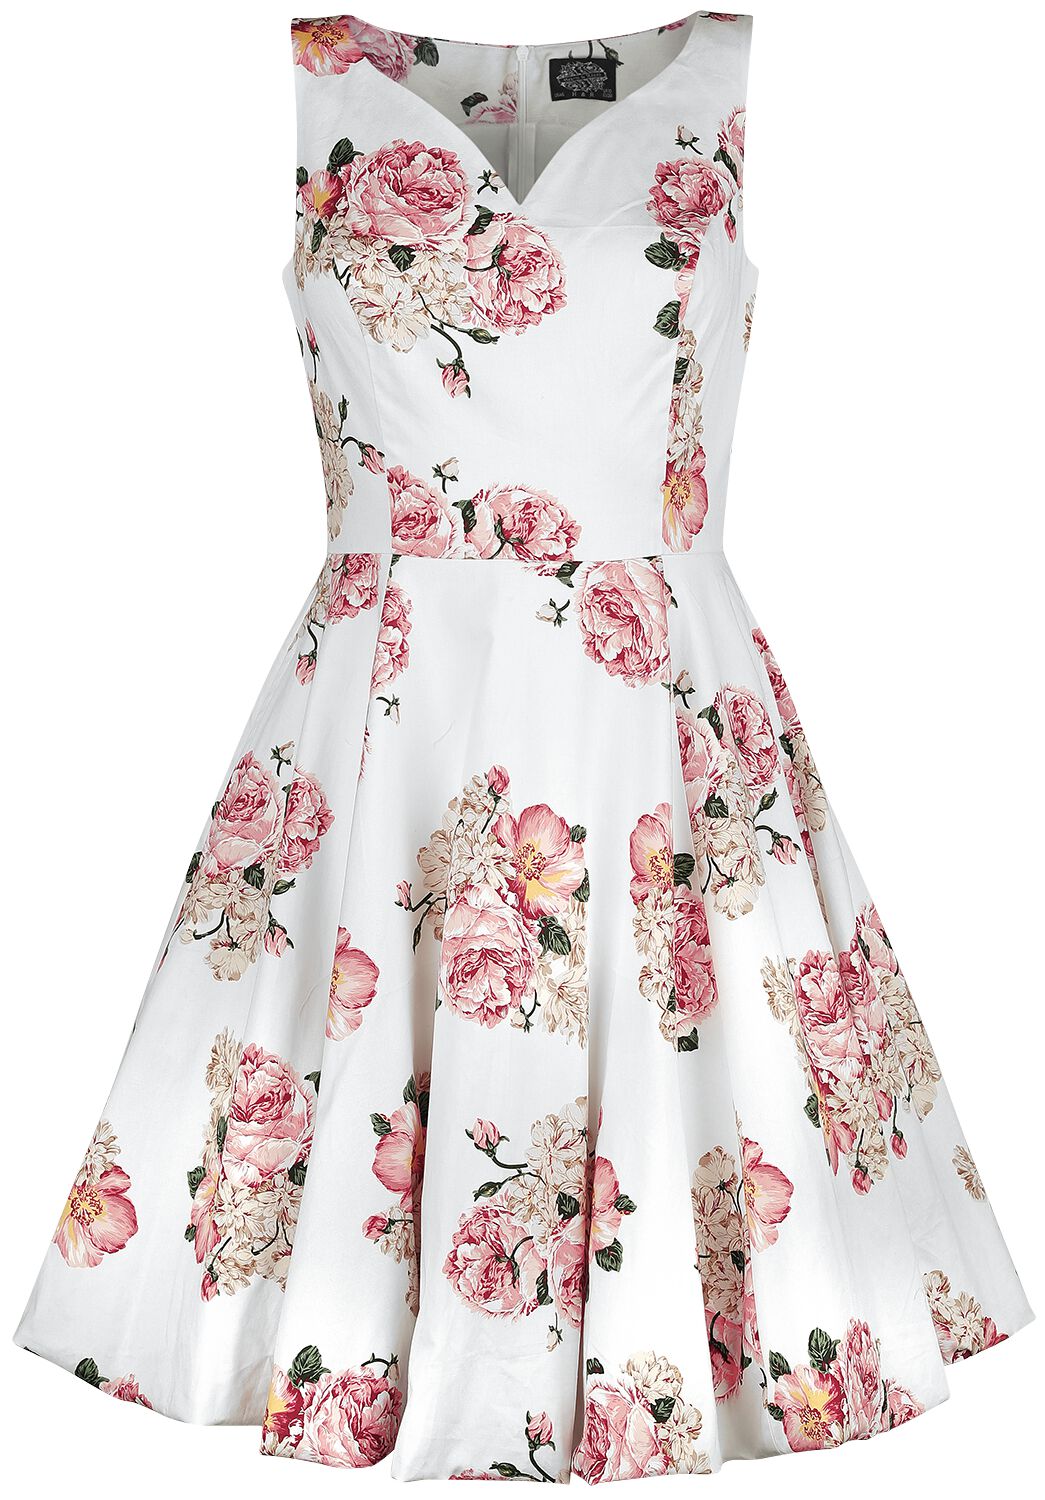 H&R London Taraneh Swing Dress Mittellanges Kleid weiß rosa in M